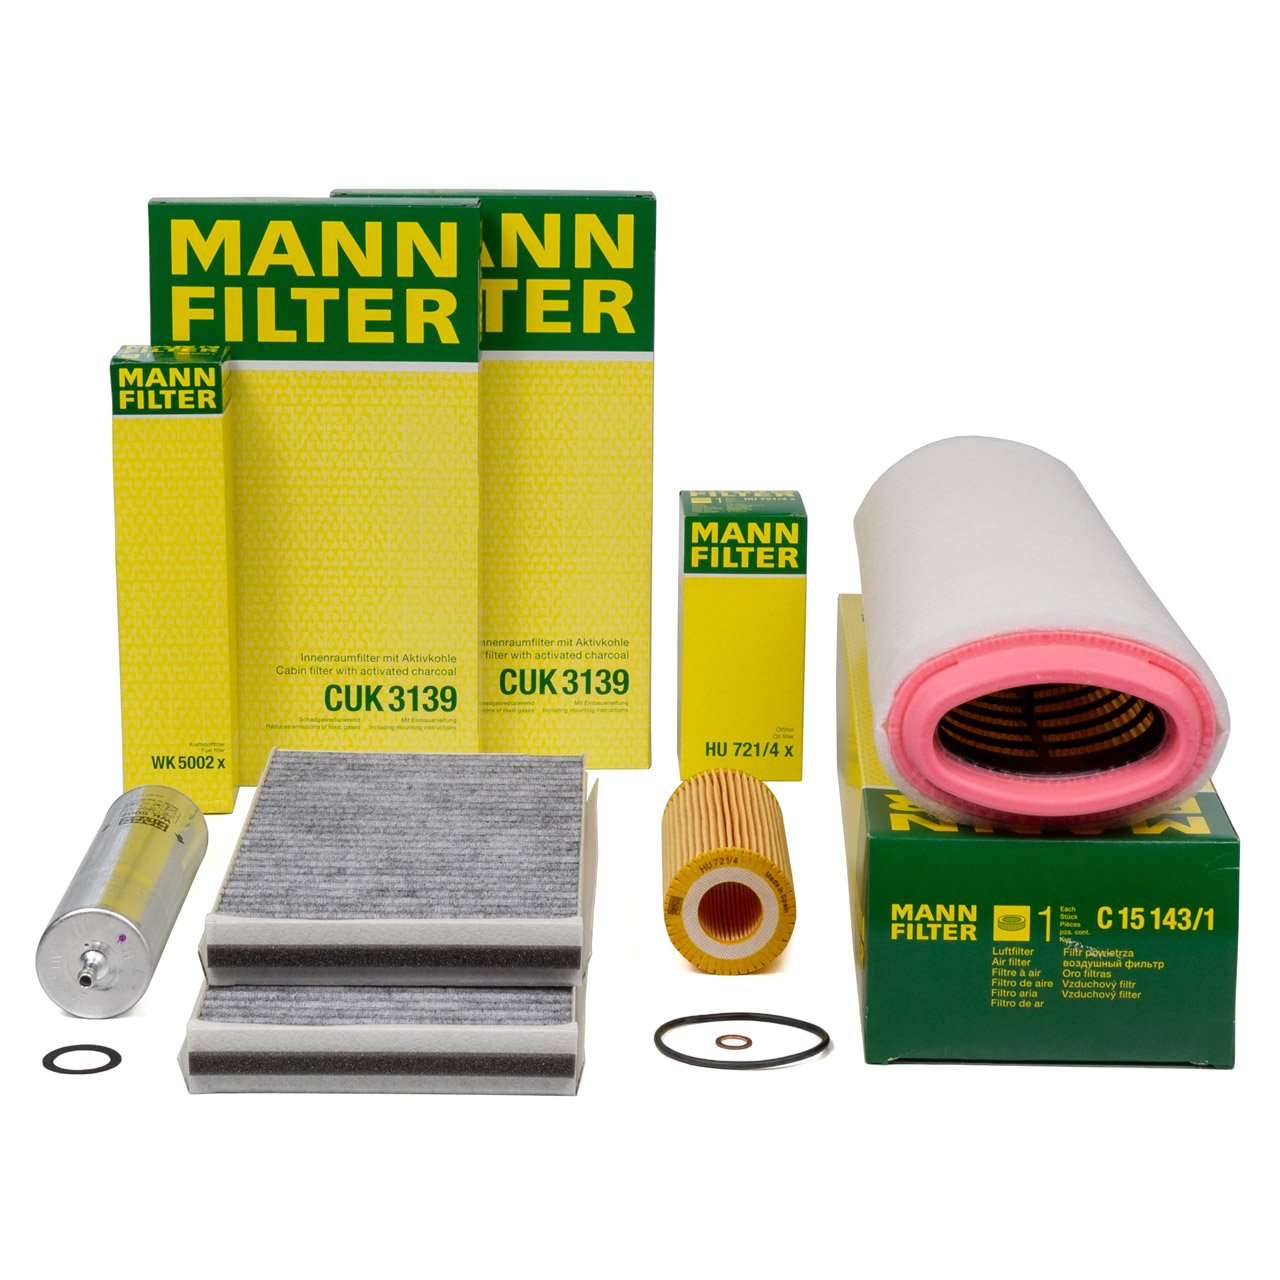 MANN Filter-Set 4-tlg BMW 5er E60 E61 525d 530d 163-235 PS M57